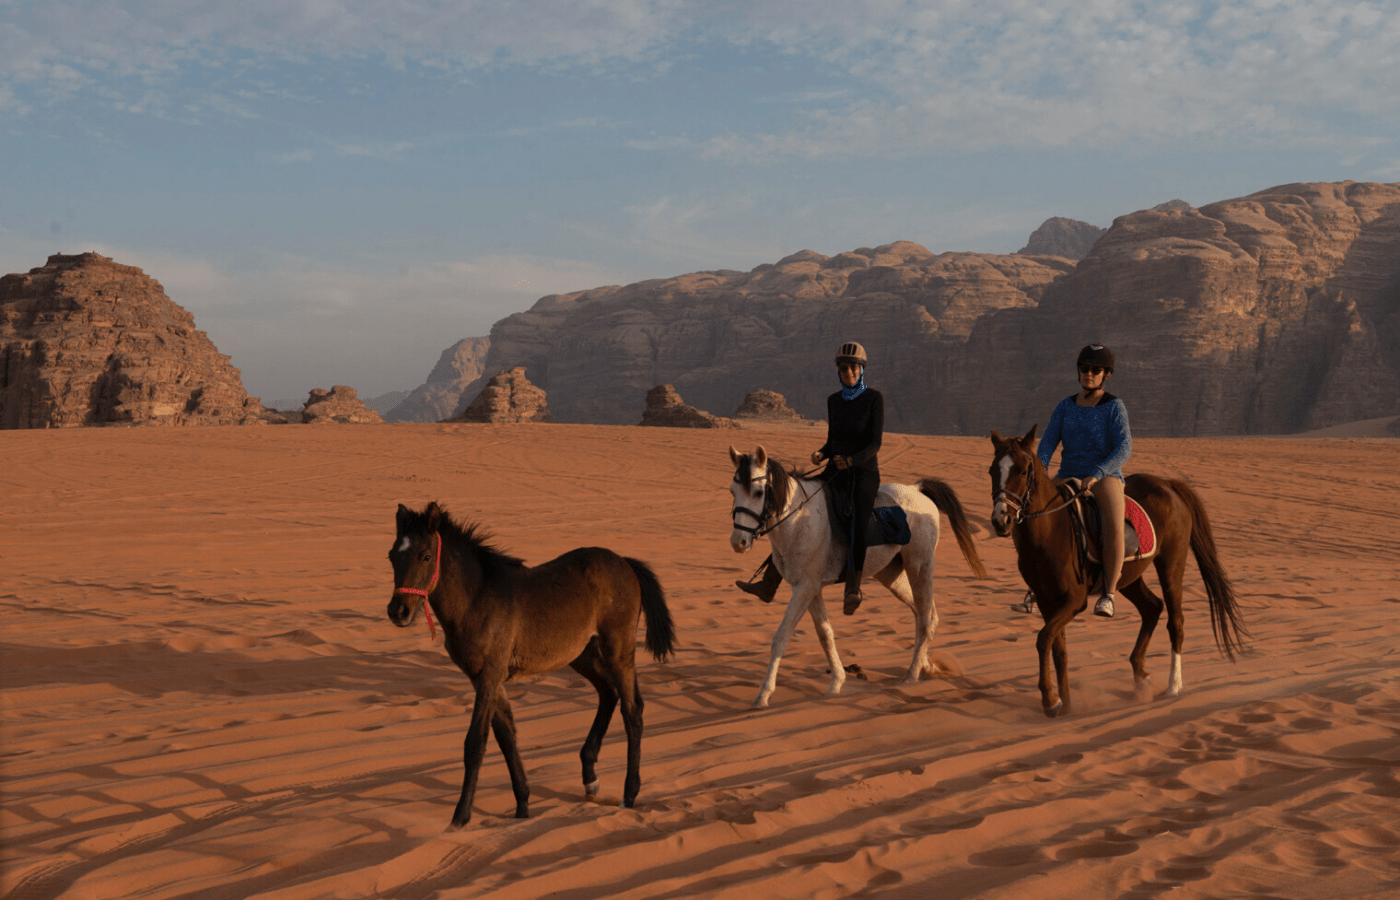 Horseback riding in the desert of Wadi Rum. Jordan